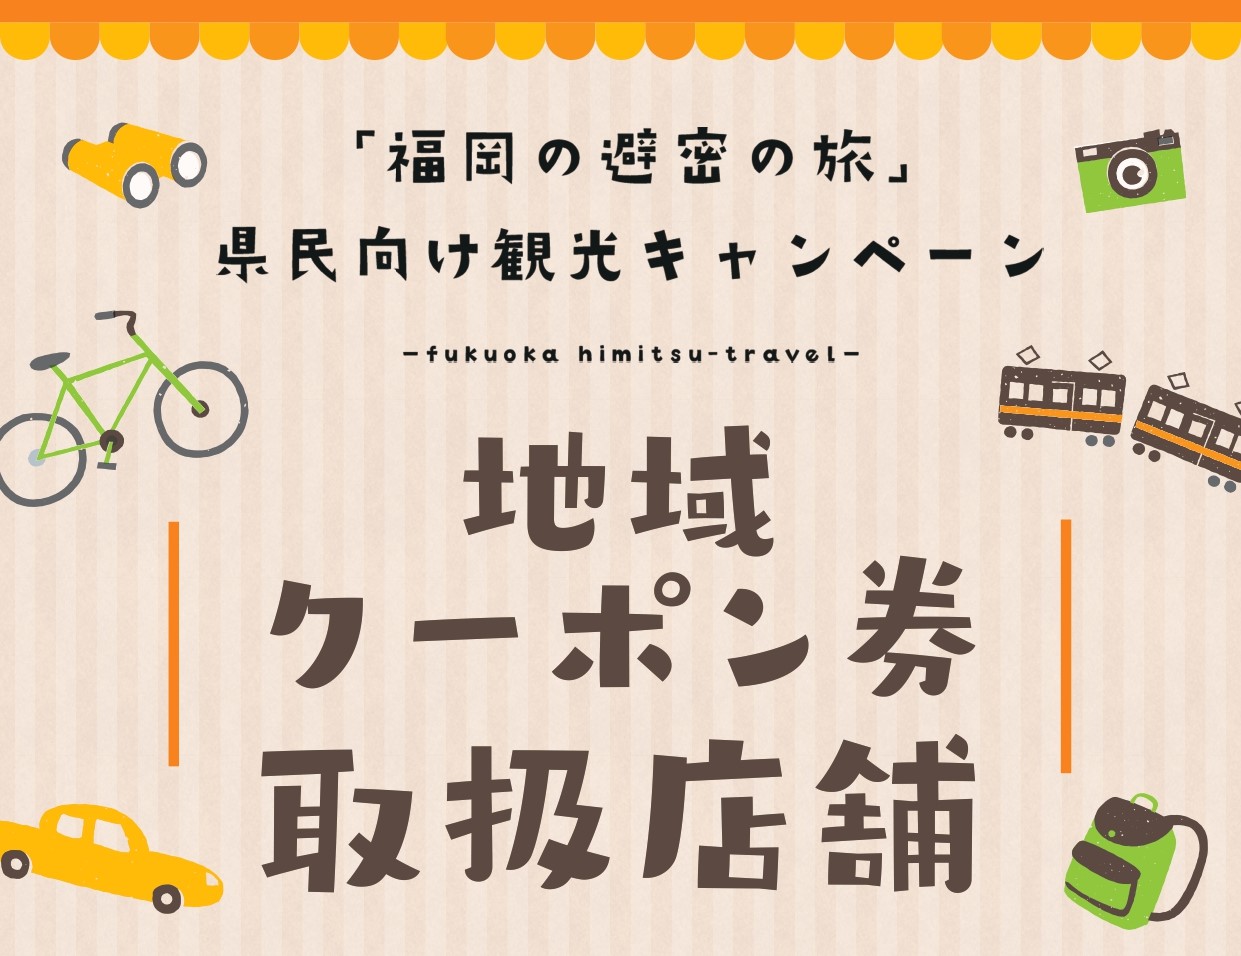 「福岡の避密の旅」地域共通クーポン券利用期間延長のお知らせ